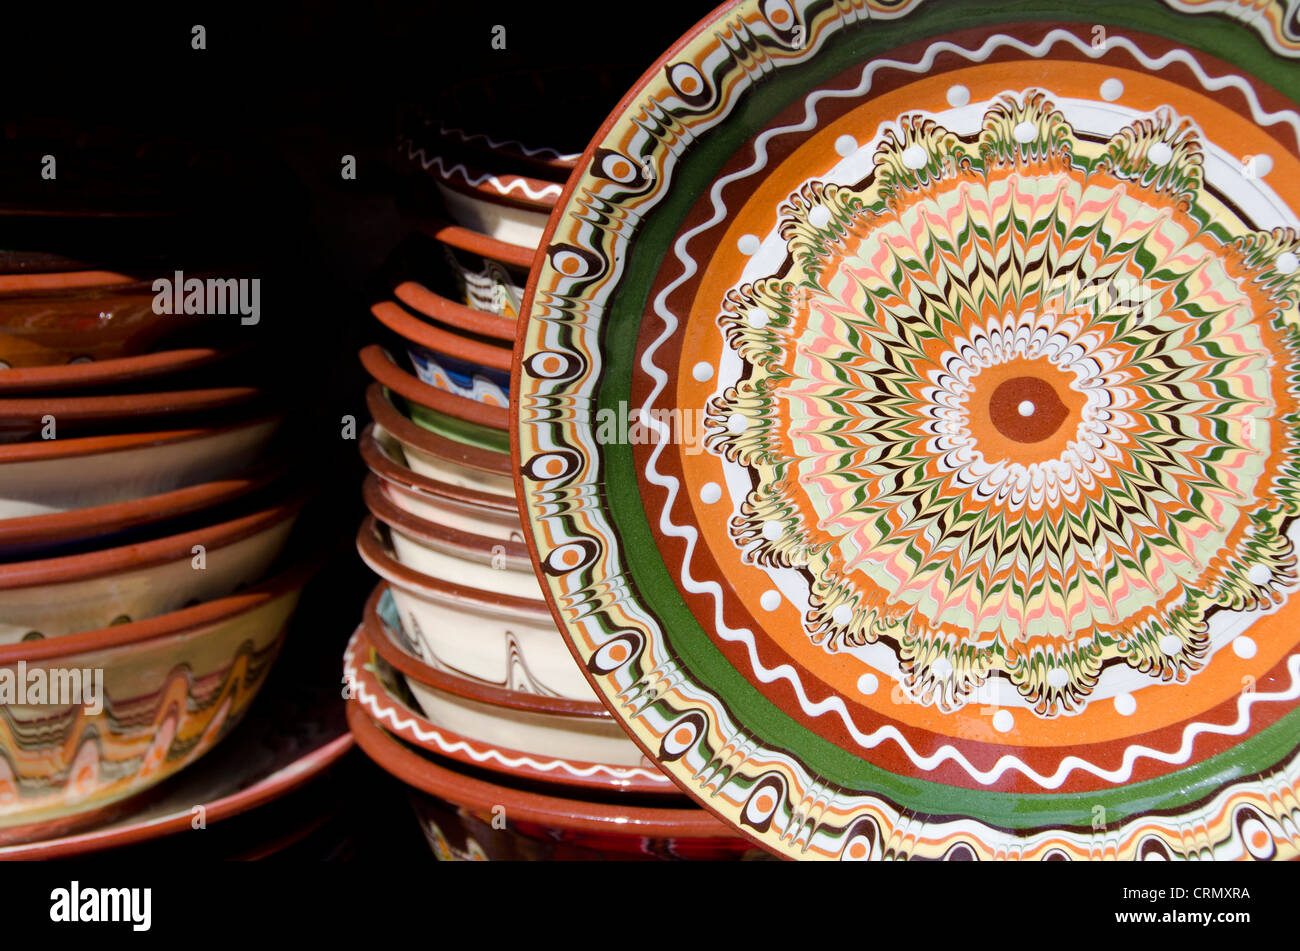 Bulgarien, Nessebar (aka Nessebar oder Nessebar). Traditionelle bulgarische Handwerk Keramik mit typischen bunten Muster. Stockfoto